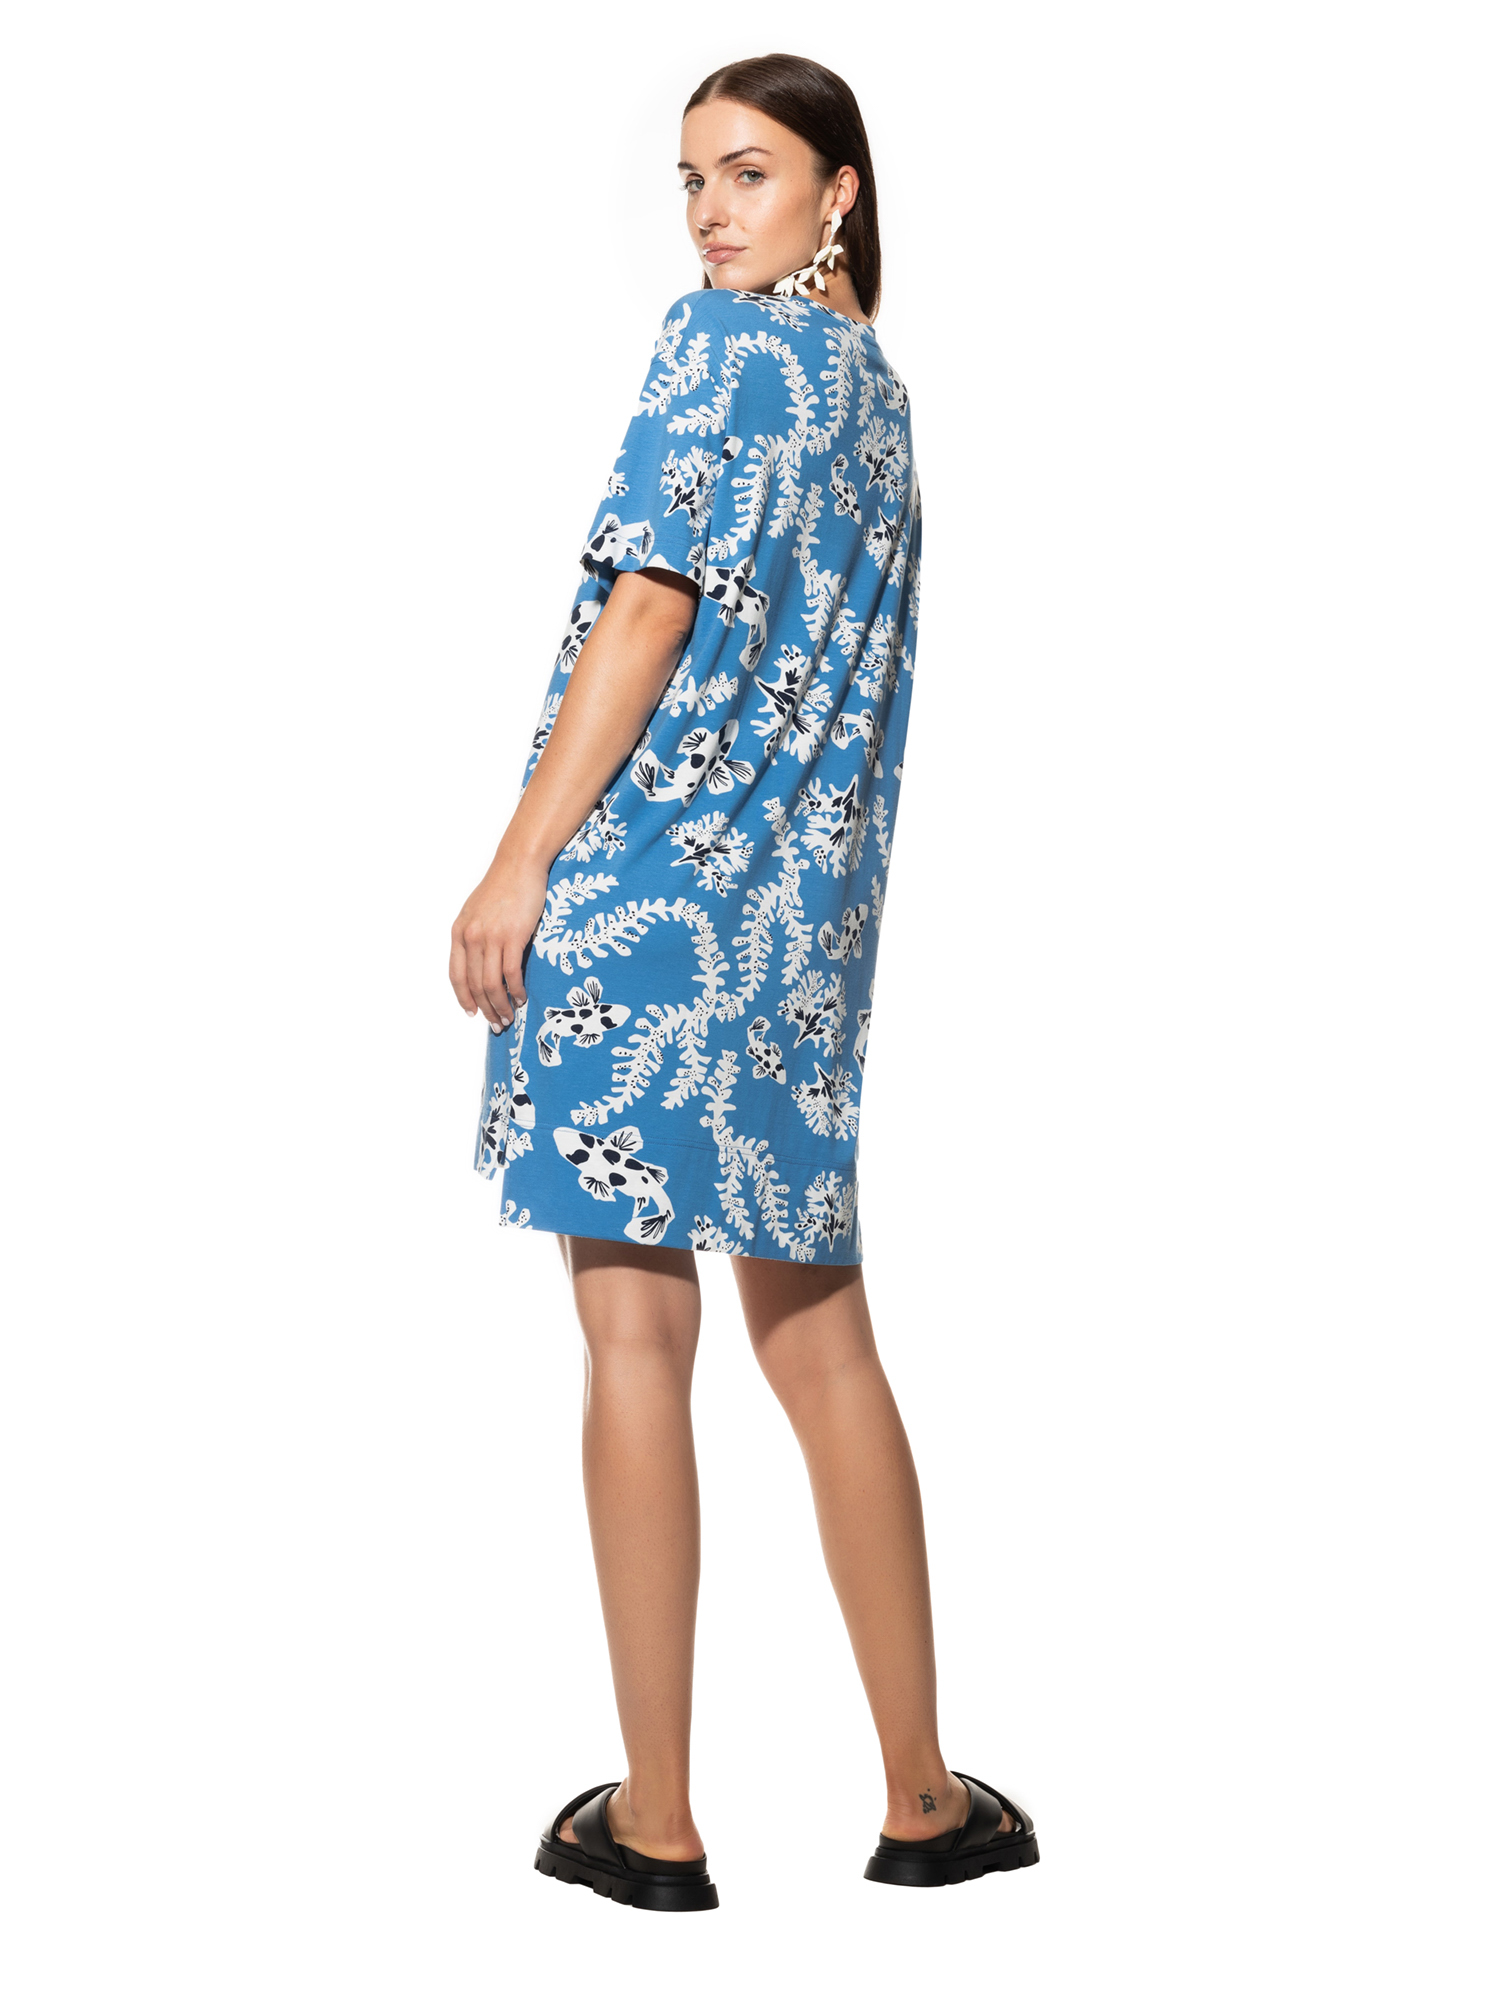 Damen-Sleepshirt mit  Allover-Print aus Baumwoll-Modal-Jersey und 1/2 Arm